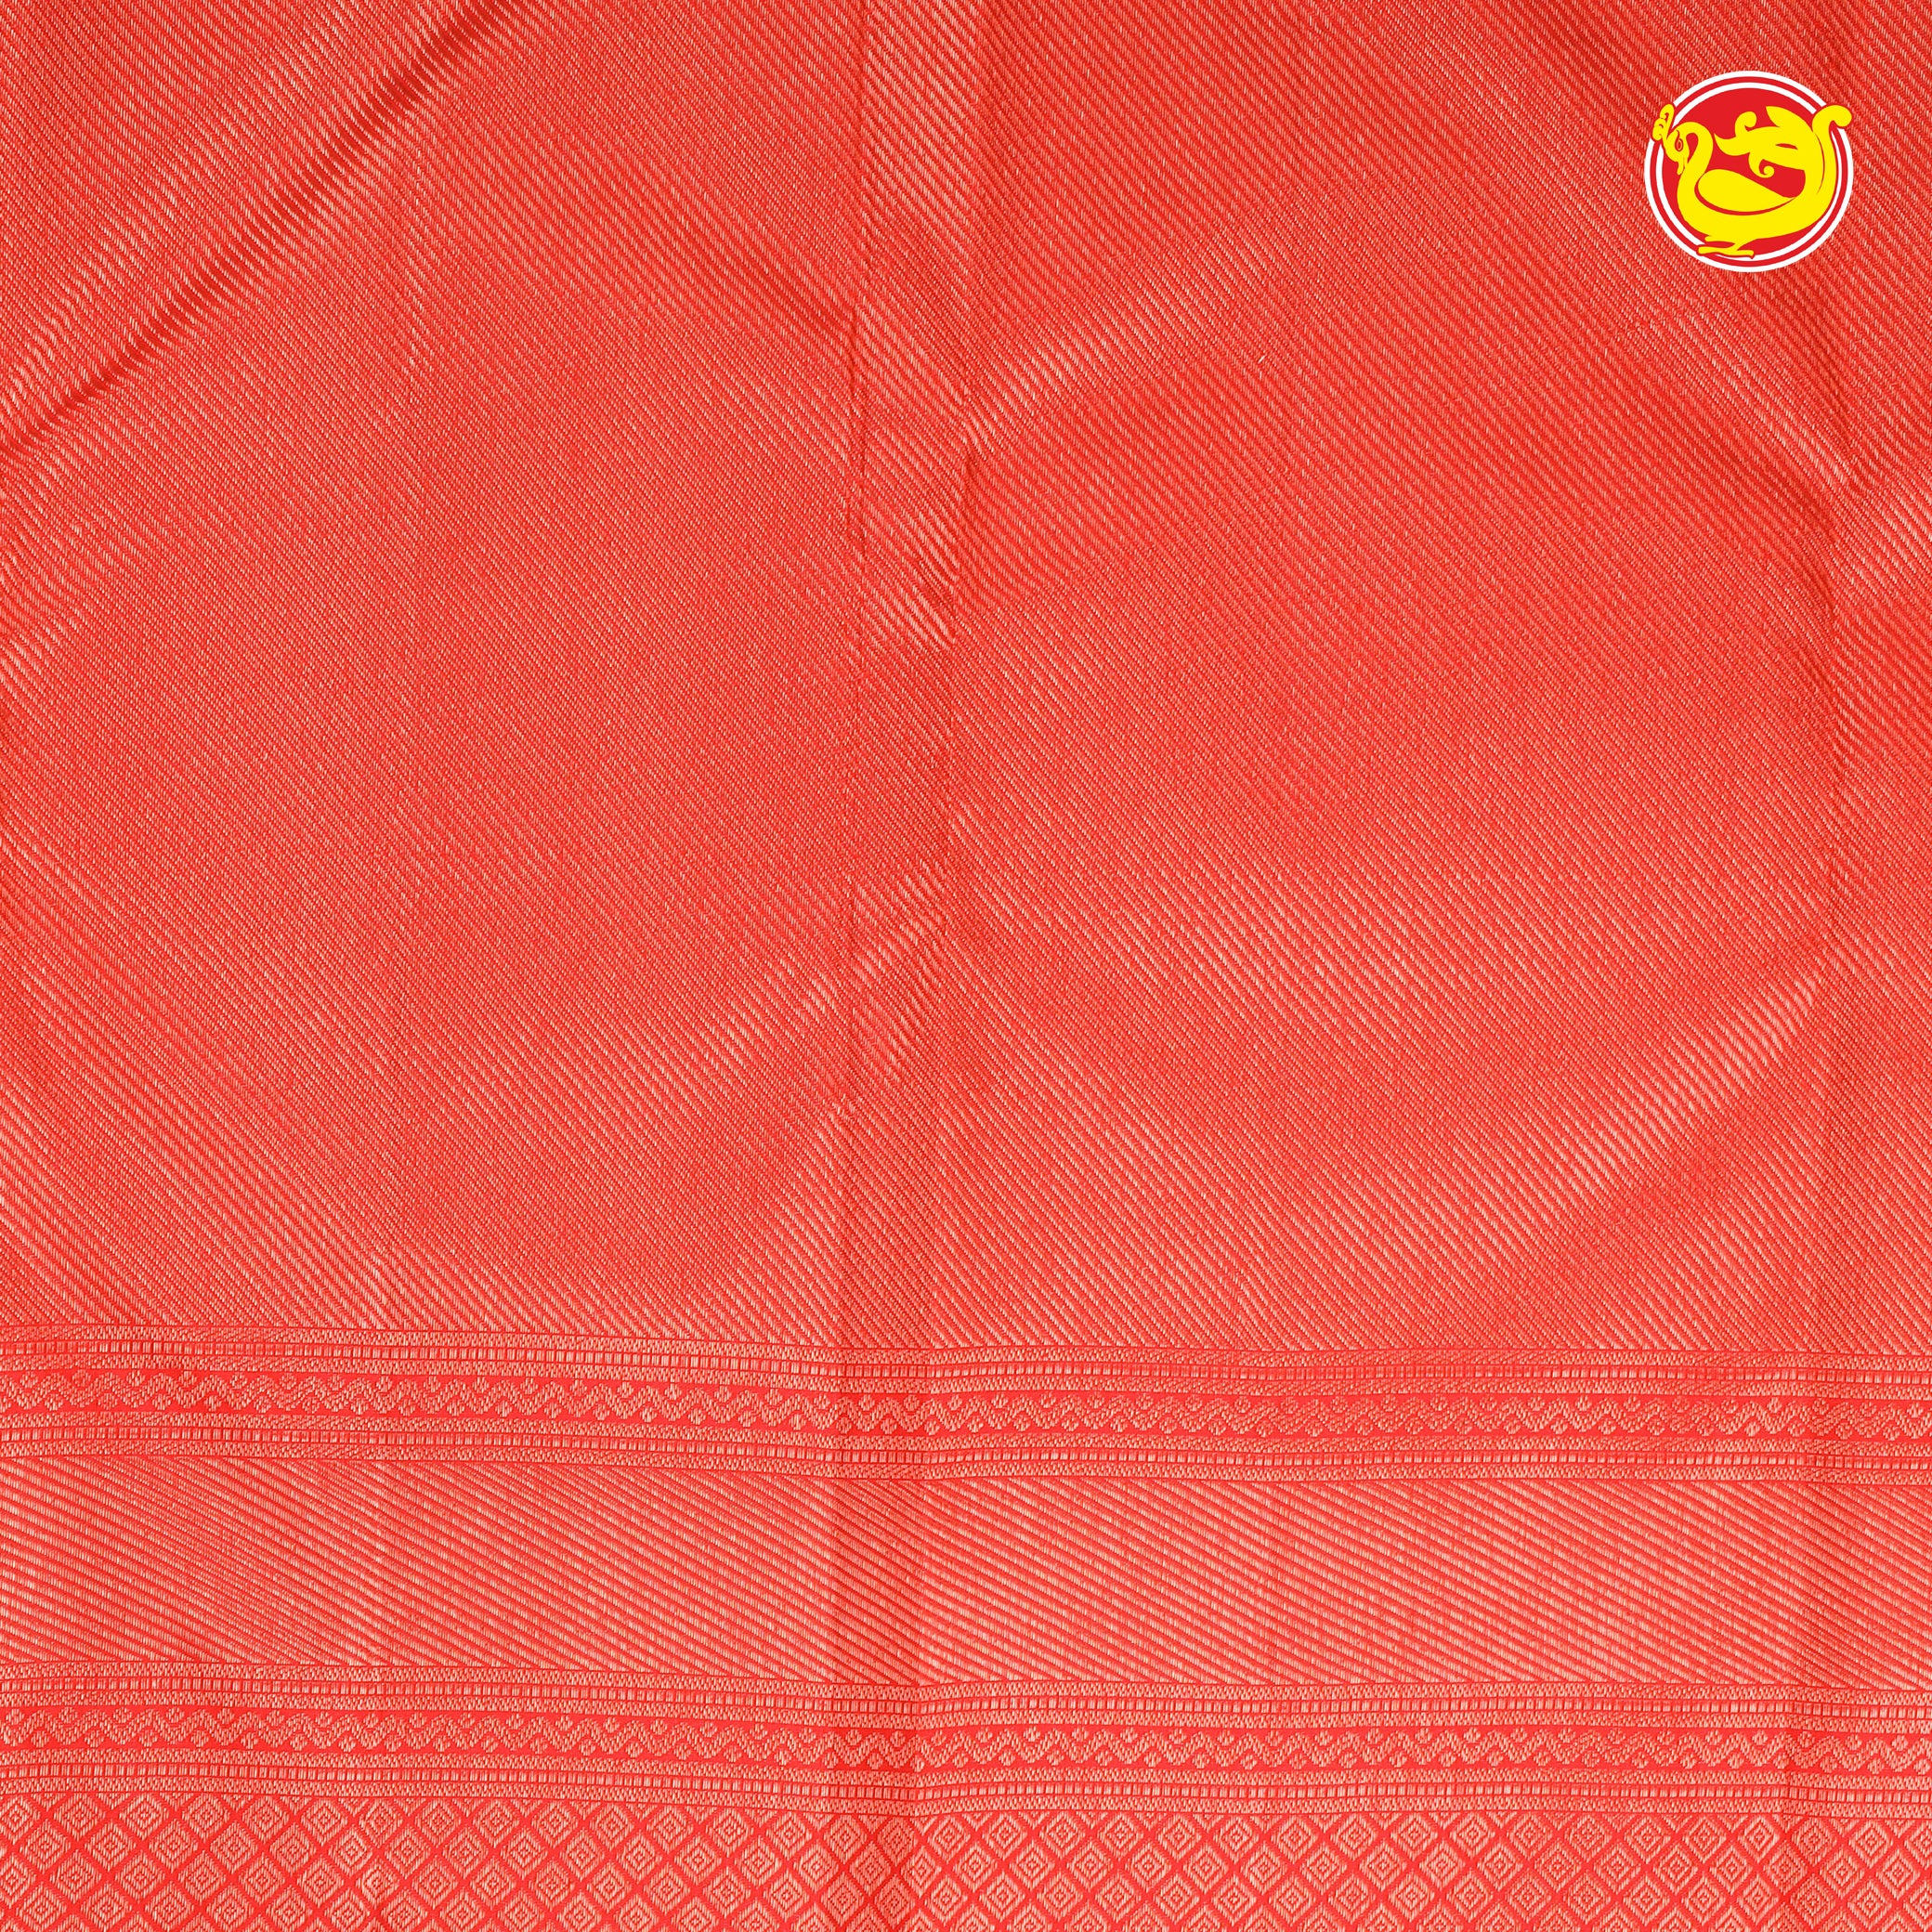 Deep red bridal silk saree